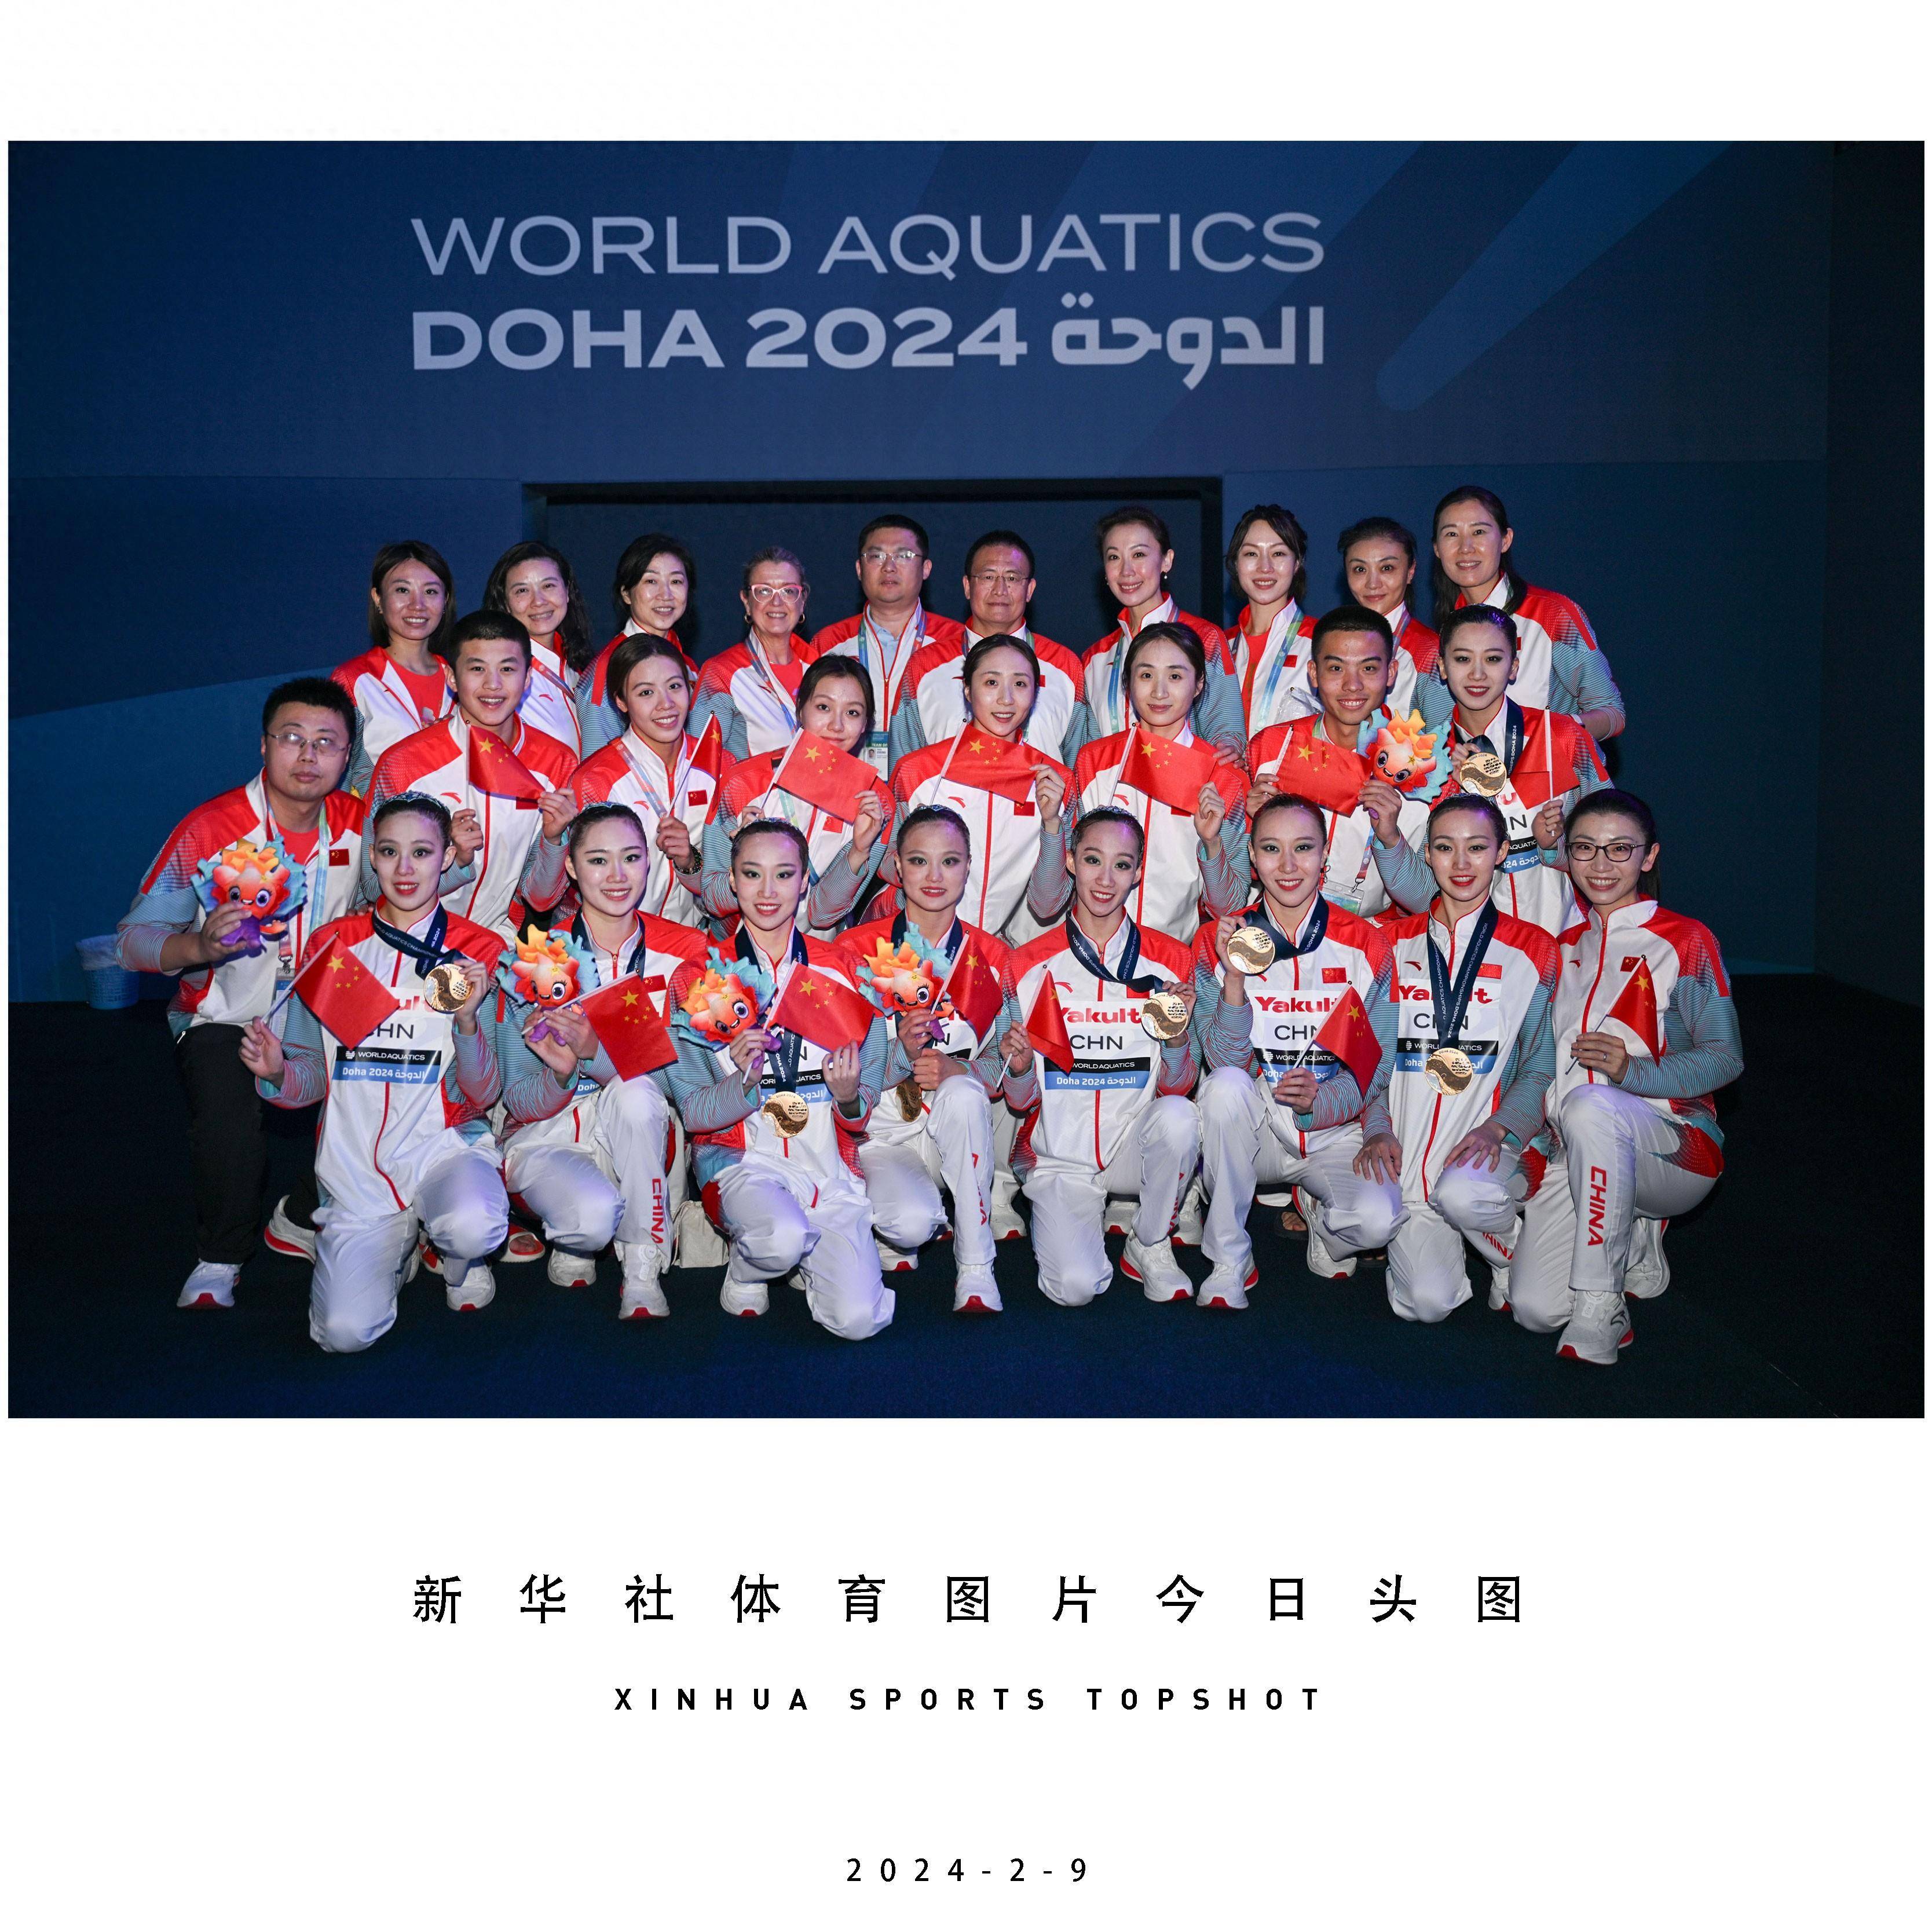 体育头图 | 中国队获游泳世锦赛花样游泳集体自由自选冠军